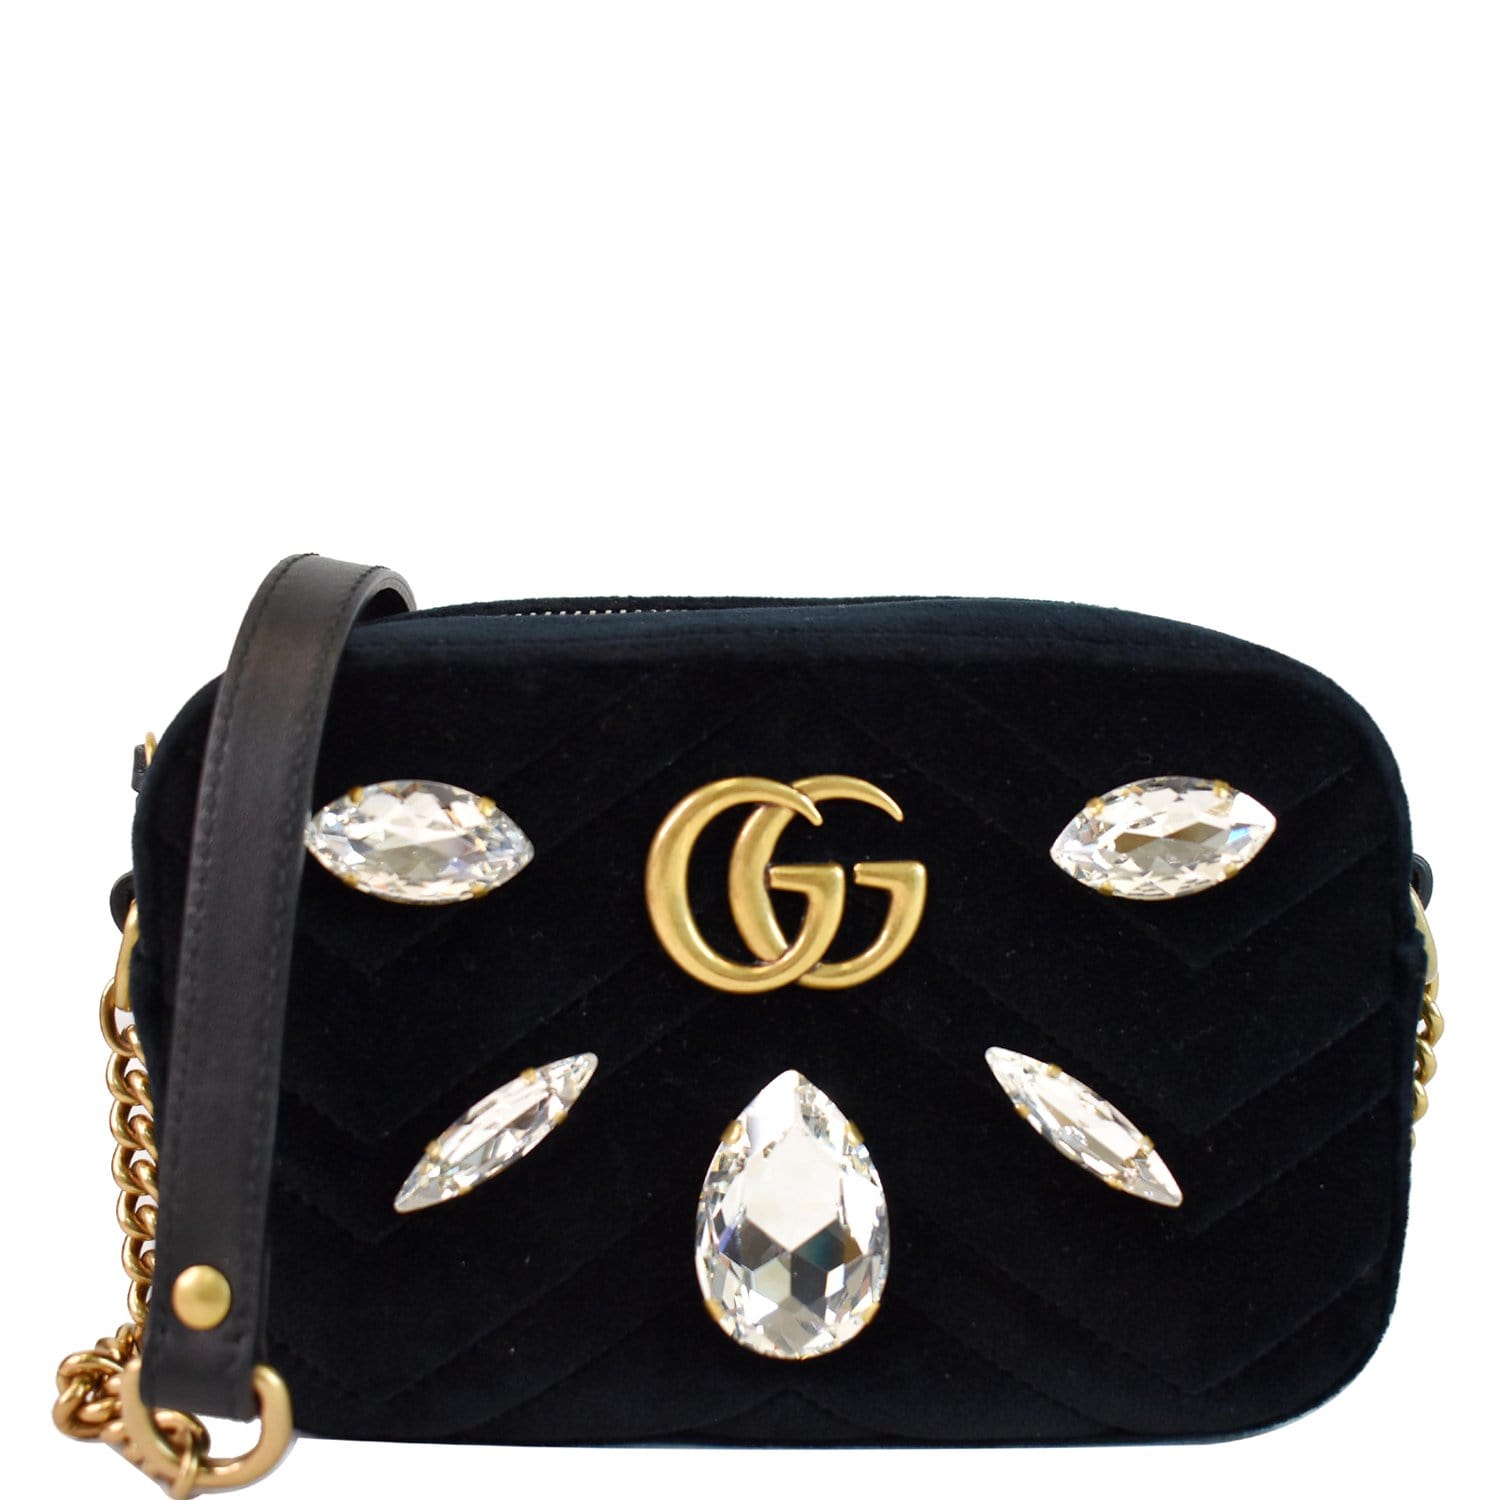 GG Crystal mini shoulder bag